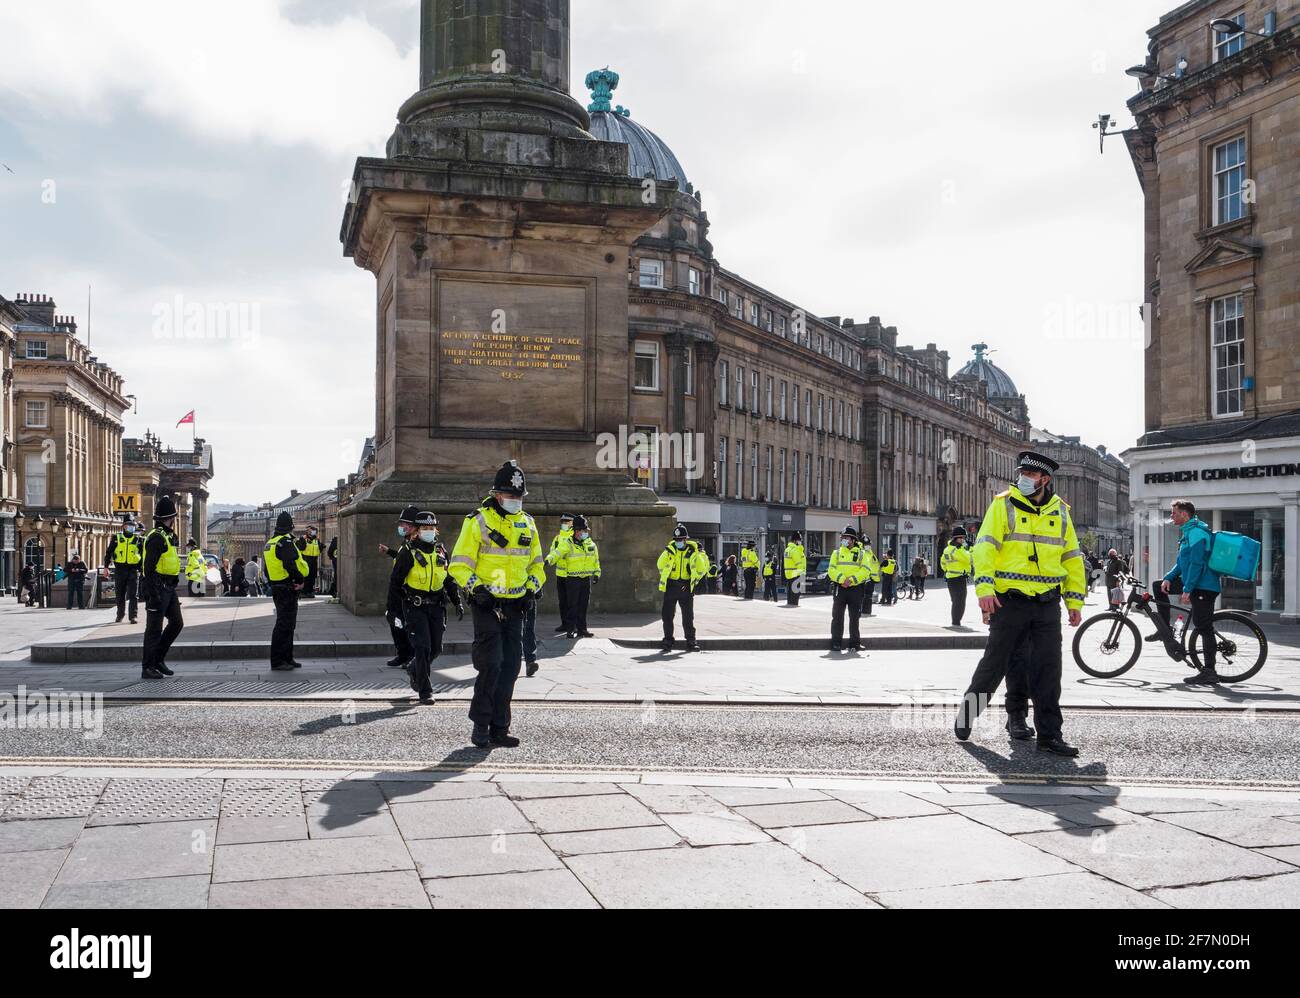 La polizia di Newcastle Upon Tyne, Regno Unito, in stato di rilettura per una protesta contro un disegno di legge che aumenterebbe i poteri di governo e polizia, il 20 marzo 2021 Foto Stock